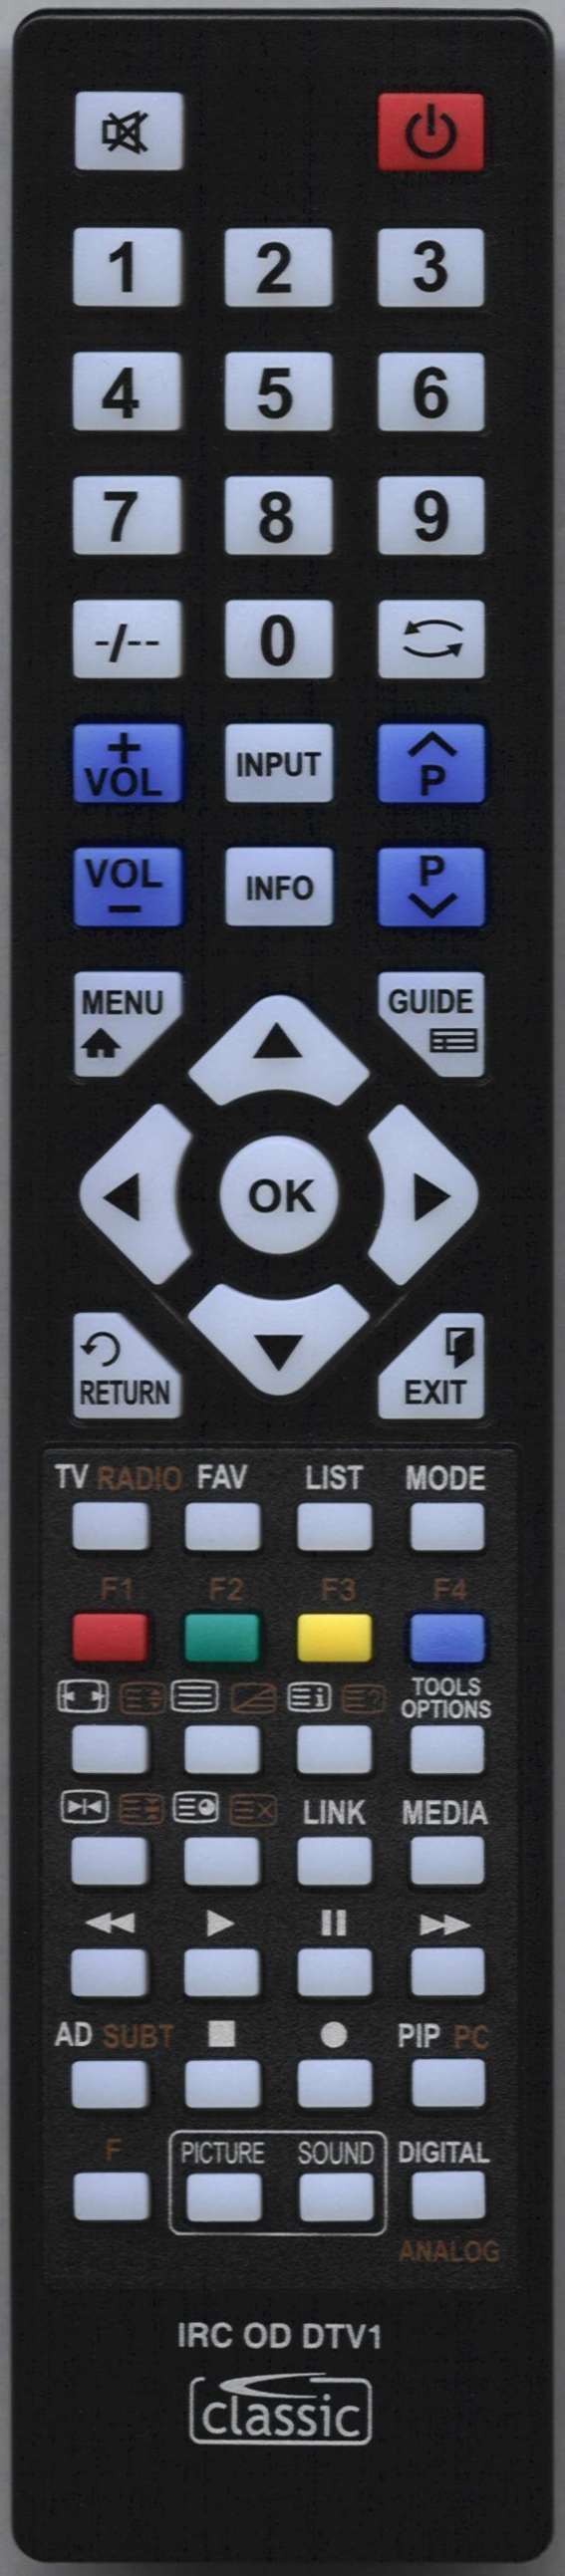 LG AKB75095308 Remote Control Alternative 